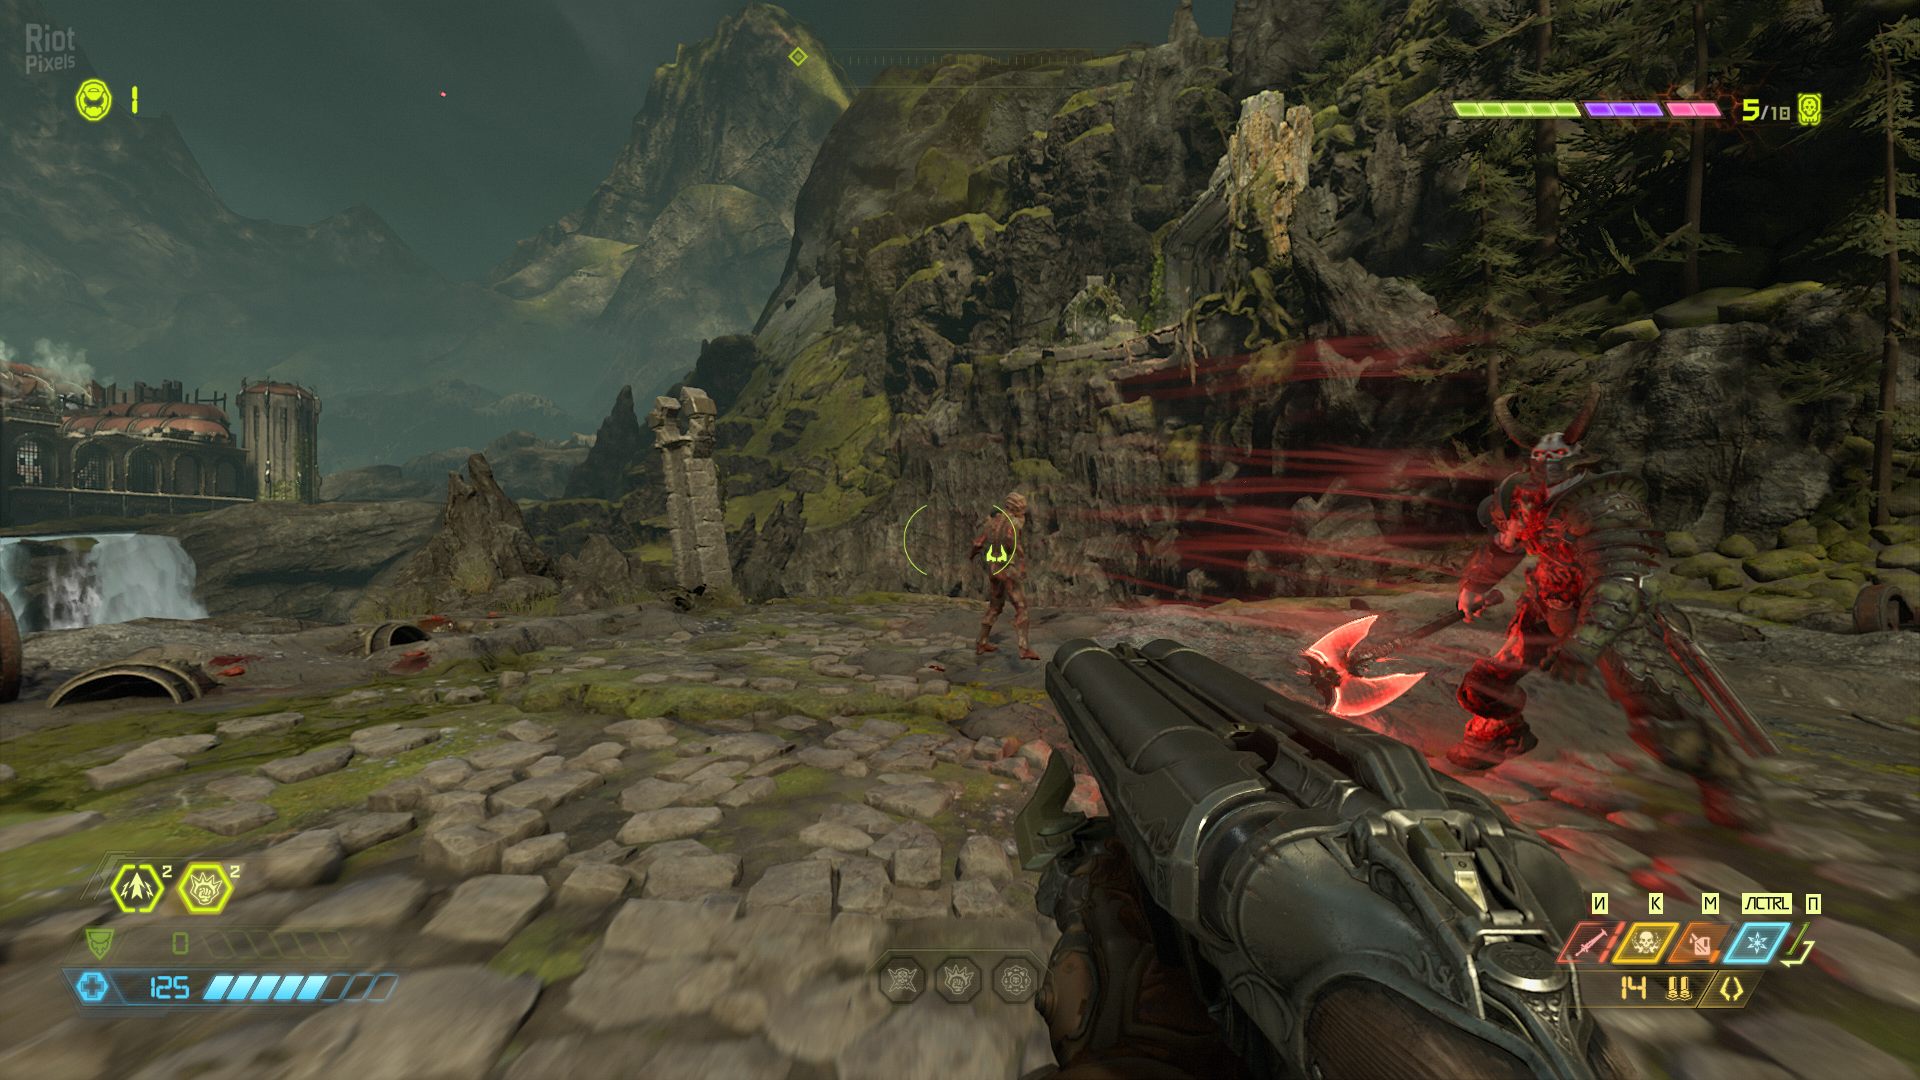 بازی Doom Eternal برای PC